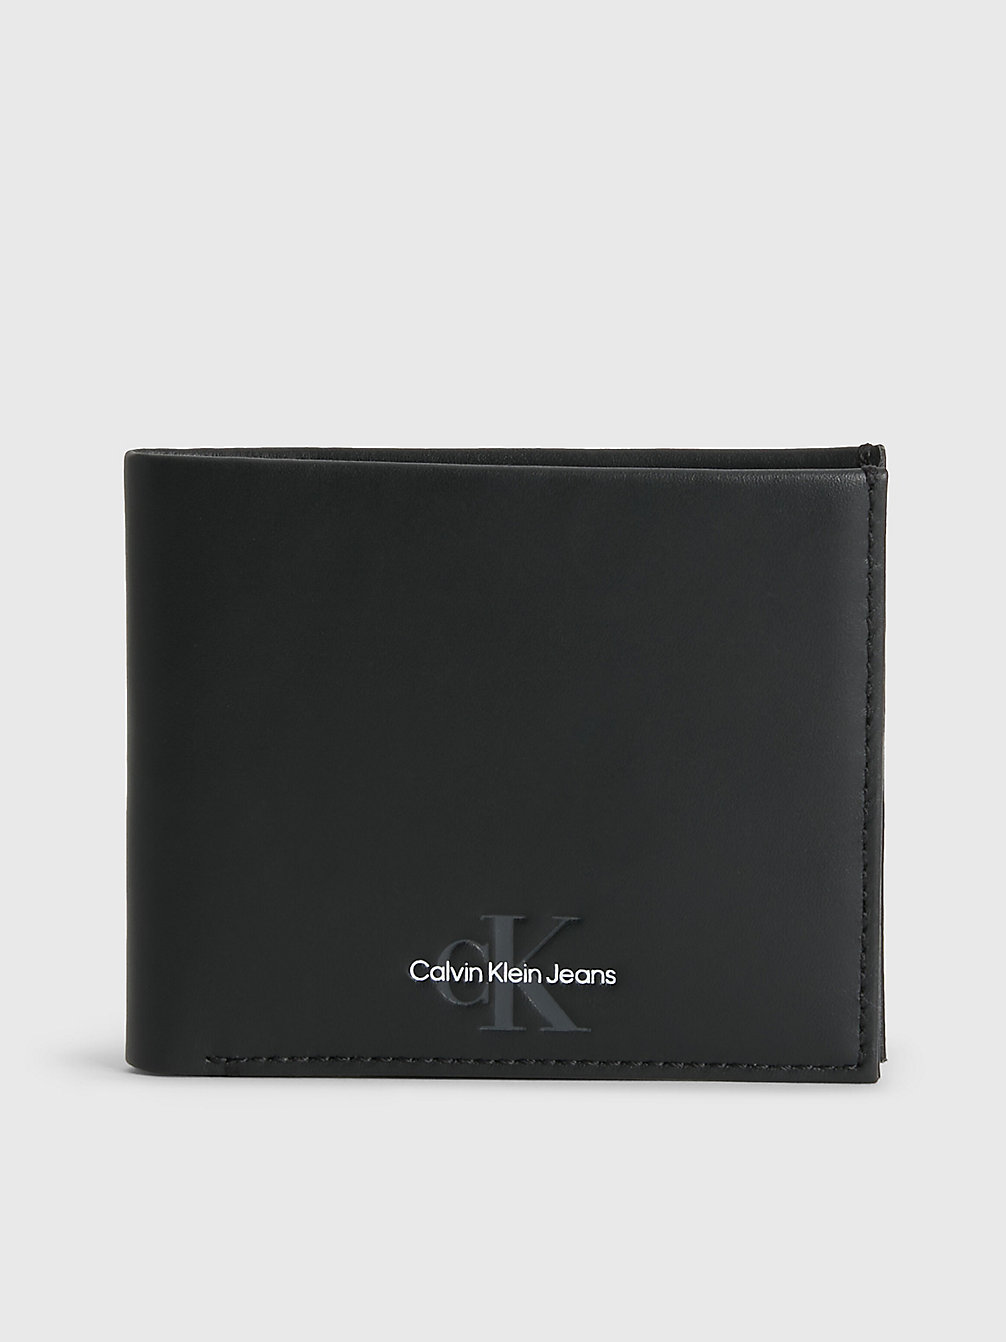 BLACK Schmales Portemonnaie Aus Leder undefined Herren Calvin Klein